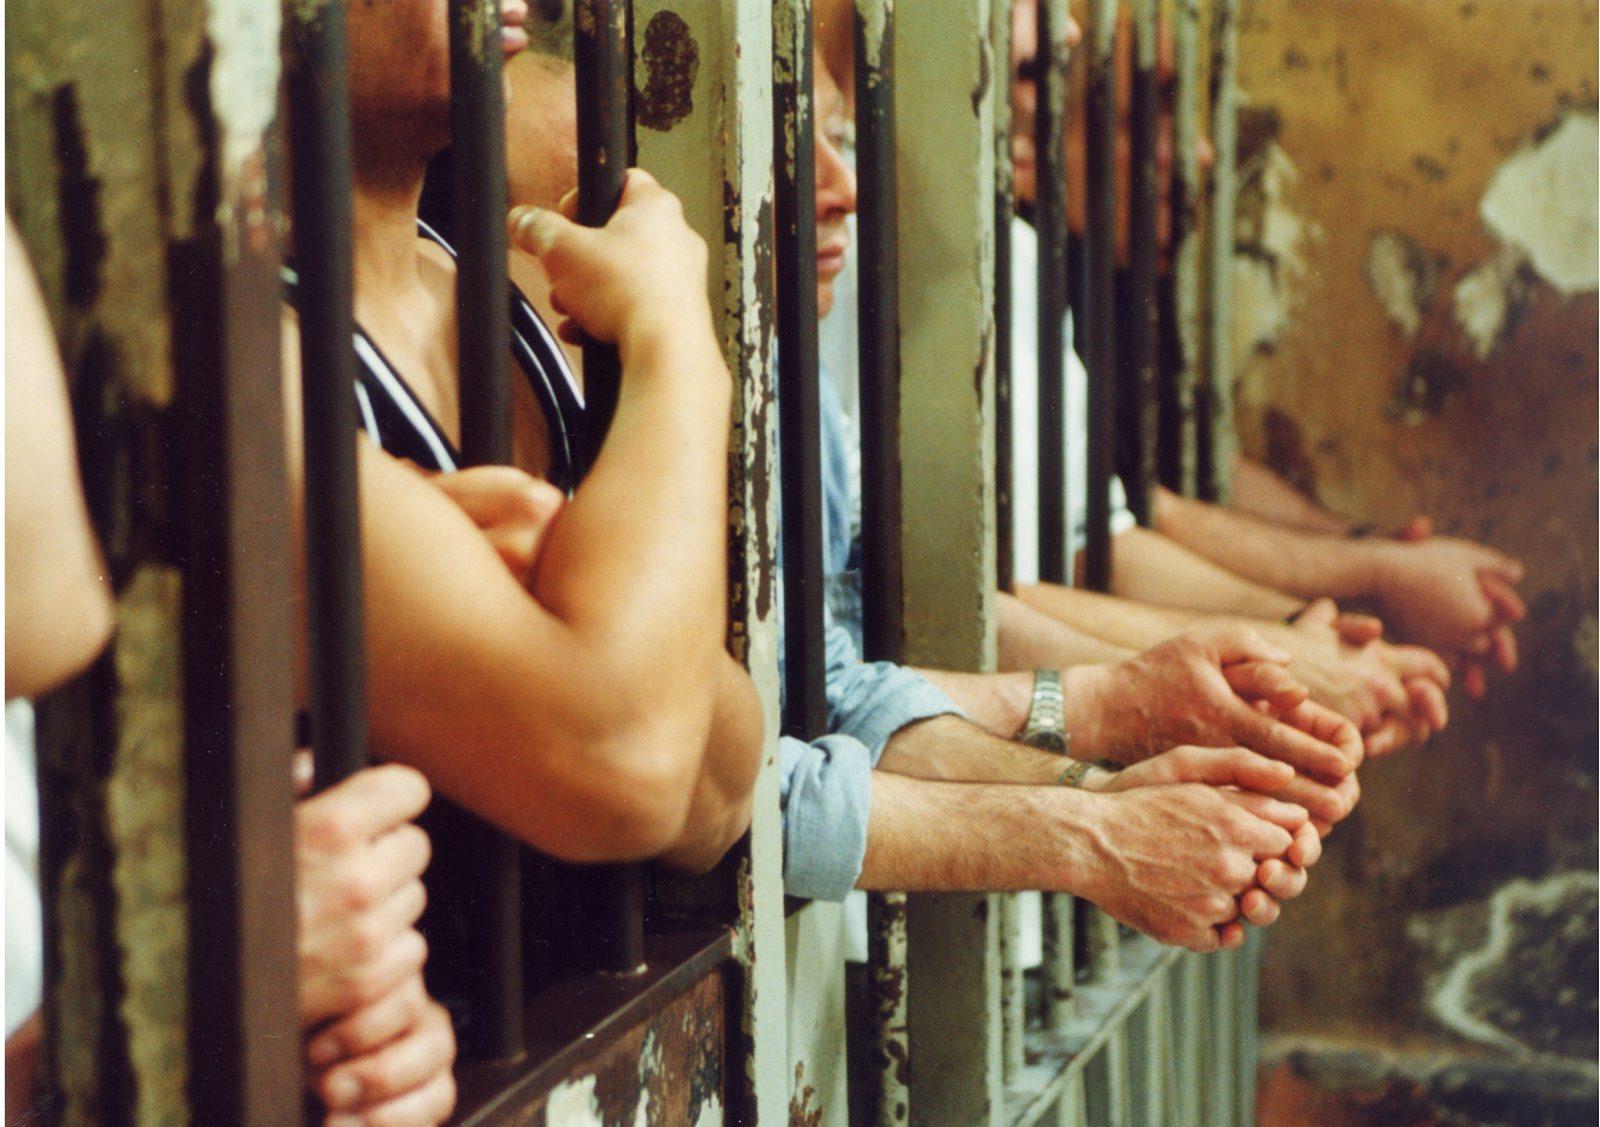 Carceri: tra proteste estreme e silenzi colpevoli